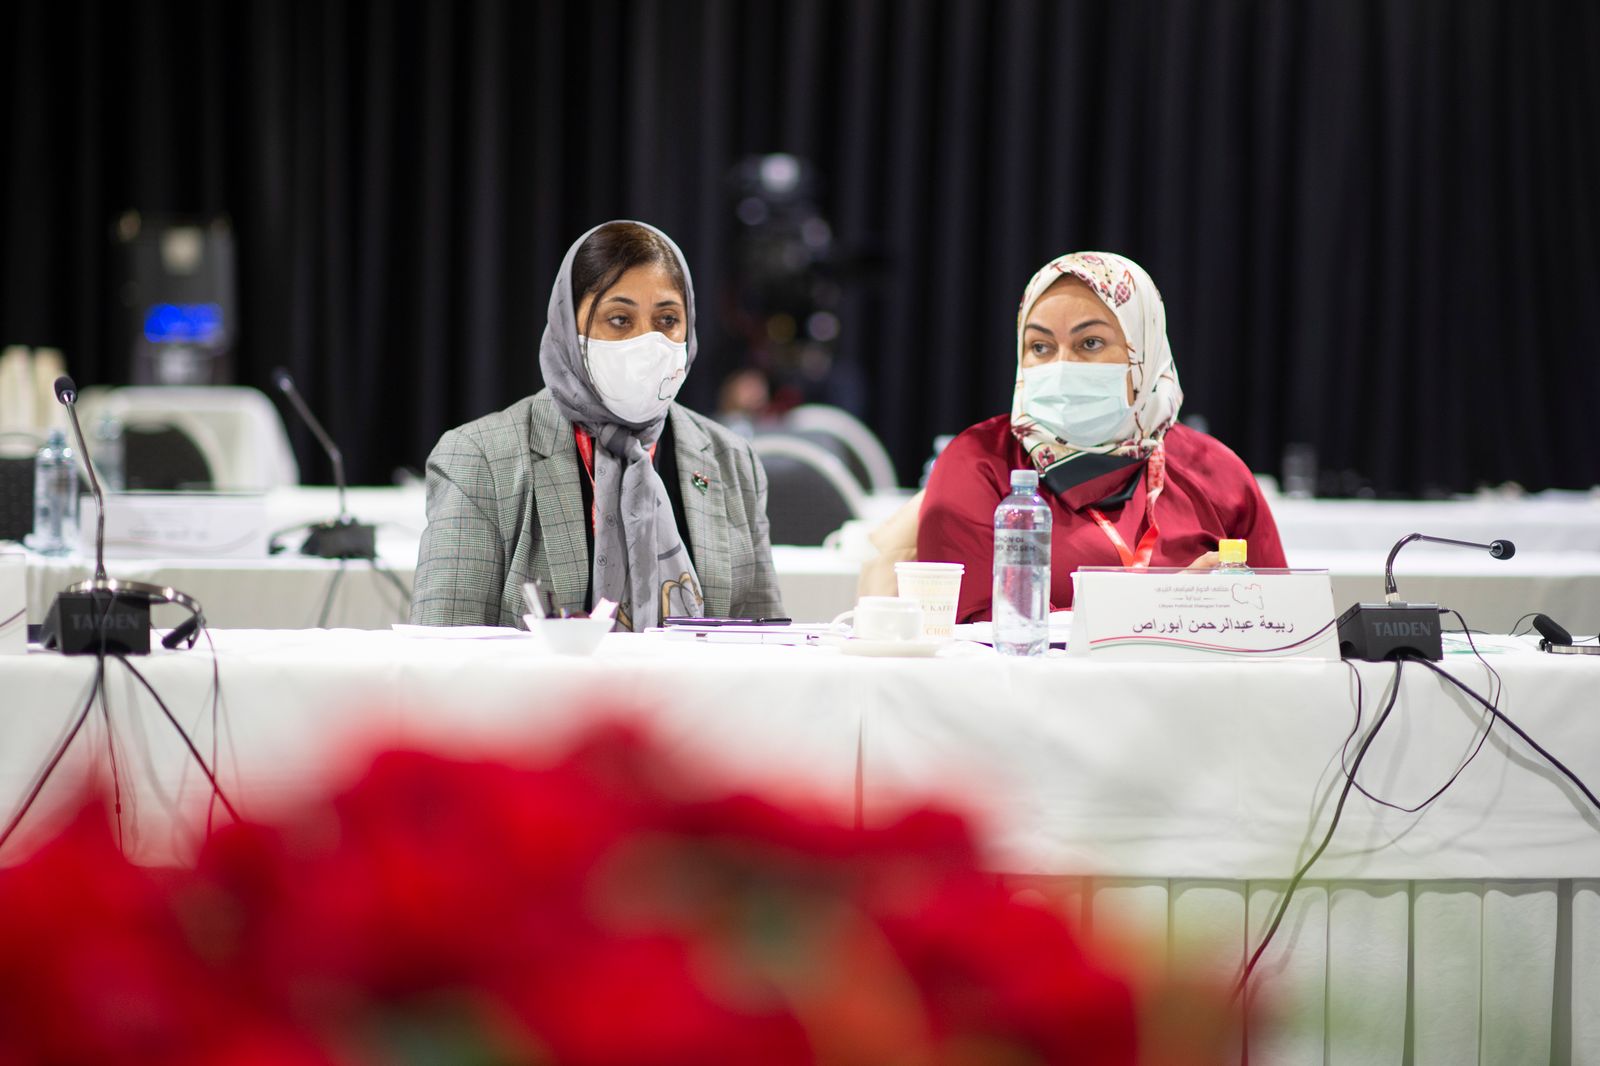 سيدتان مشاركتان في جلسات الحوار السياسي الليبي برعاية أممية في جنيف- 2 فبراير 2021 - UN Photo